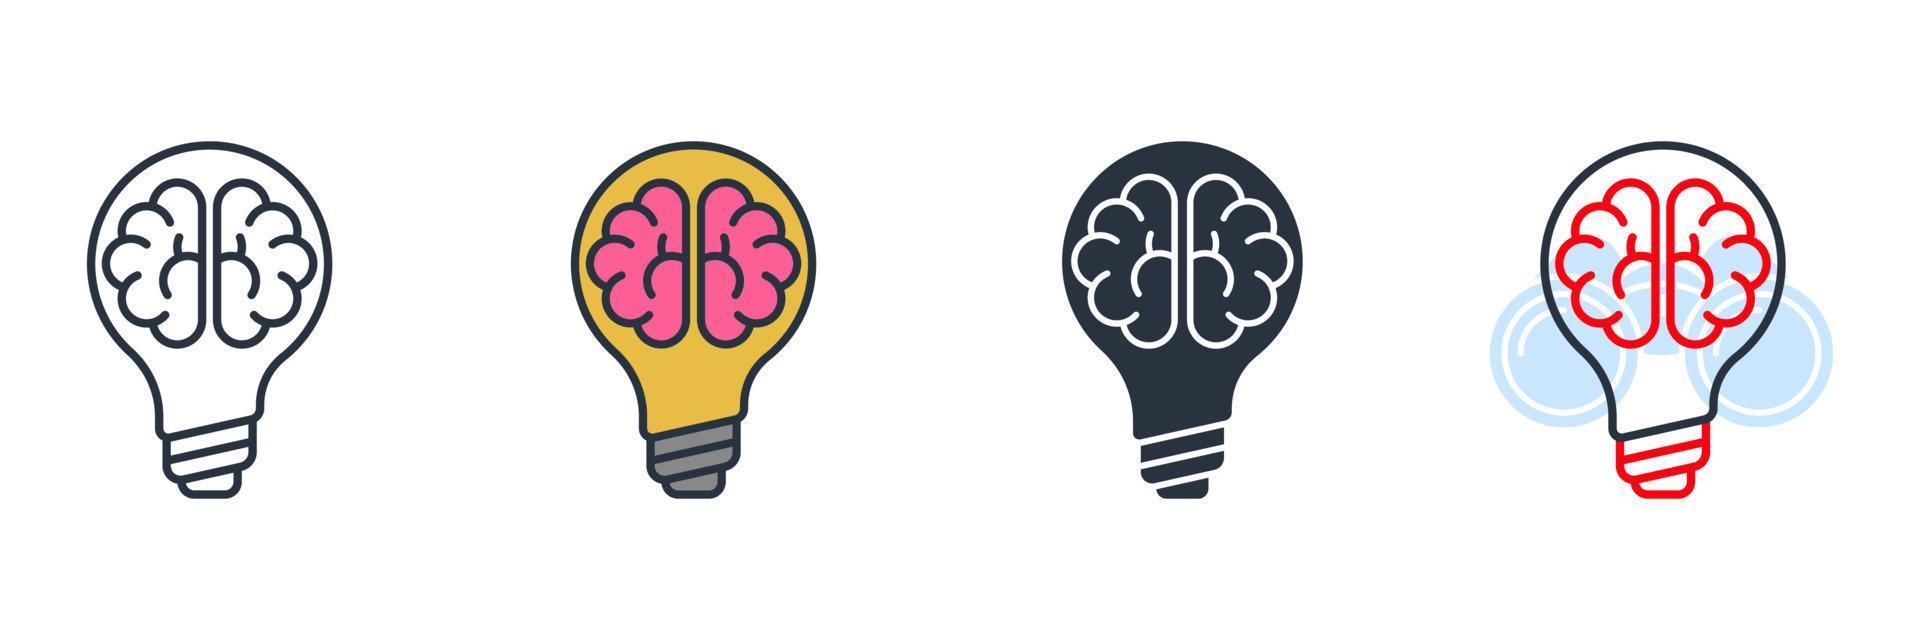 cérebro em ilustração em vetor logotipo ícone lâmpada. modelo de símbolo de ideia criativa para coleção de design gráfico e web